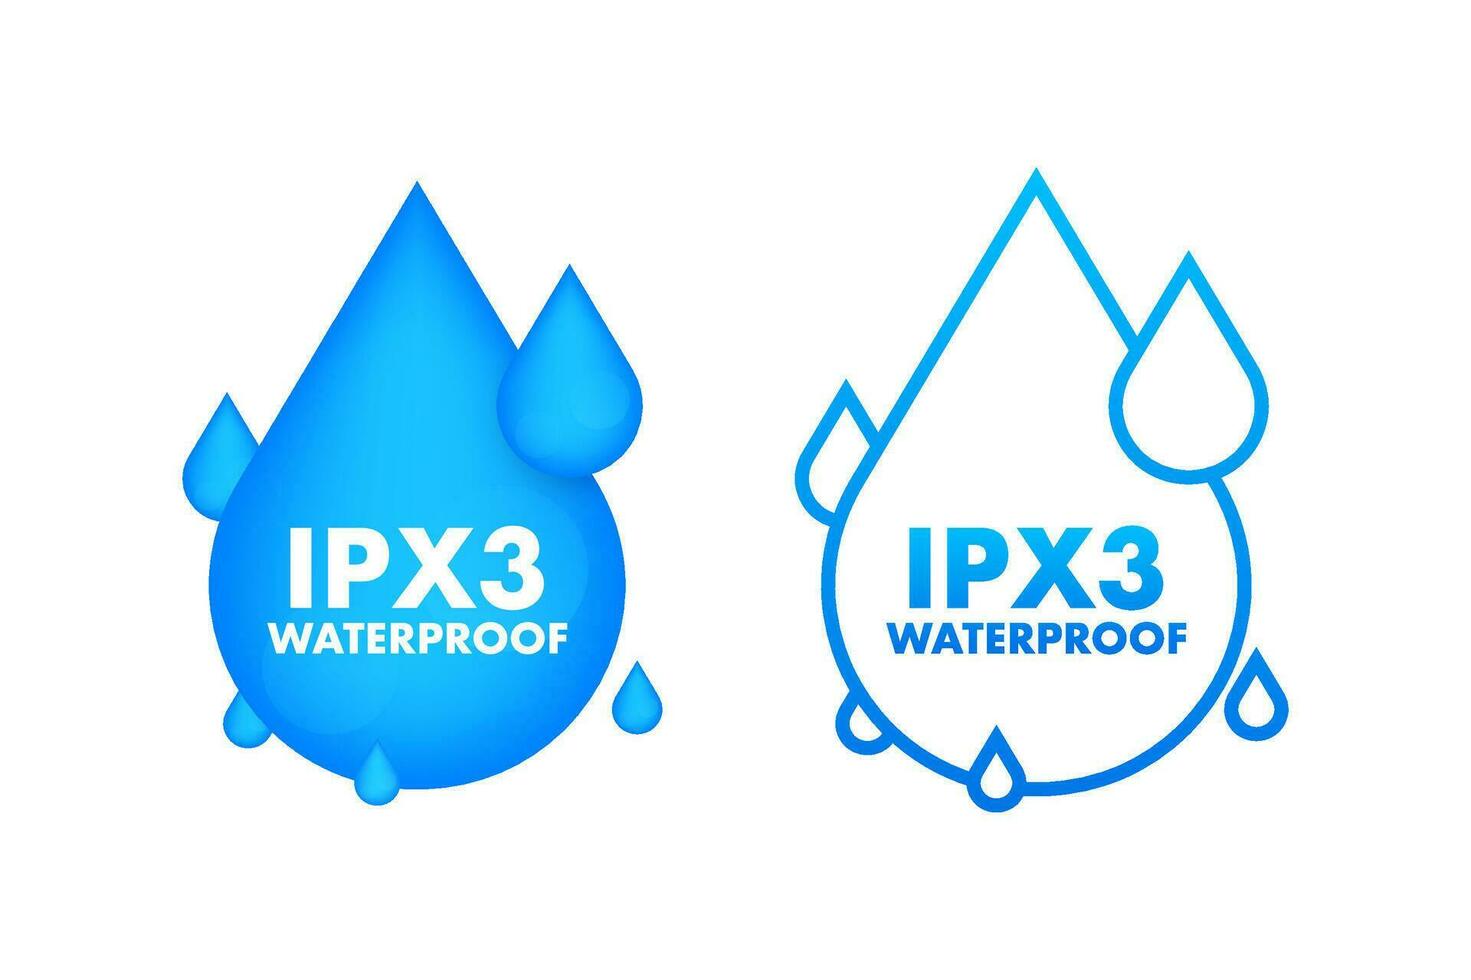 ipx3 vattentät, vatten motstånd nivå information tecken. vektor